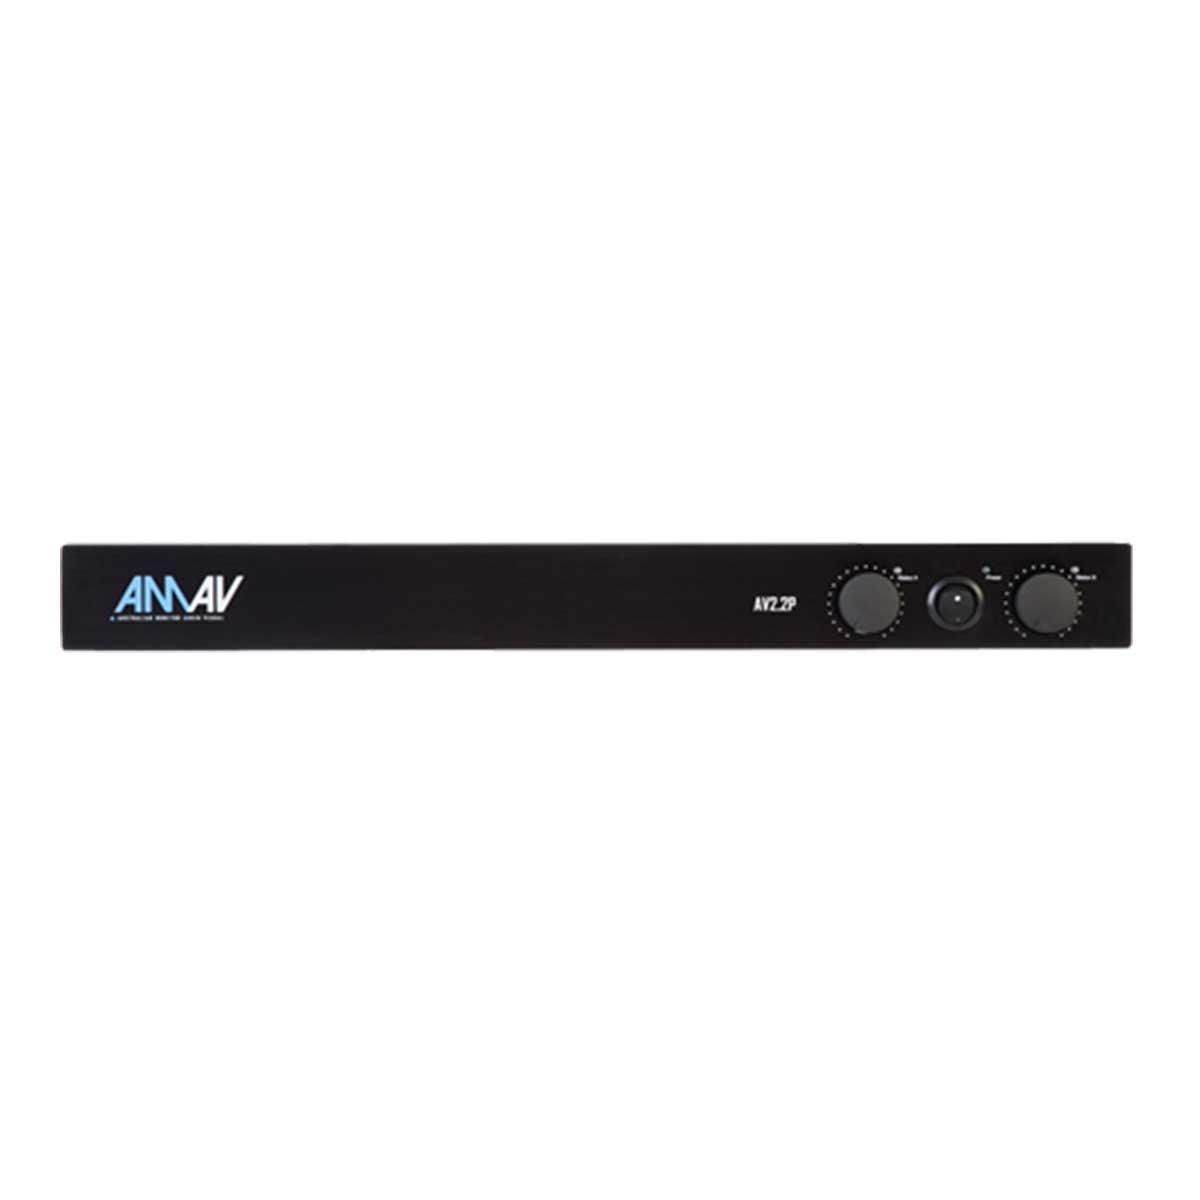 Australian Monitor AV2-2P 2 x 100W Power Amplifier Low Impedance, Fanless